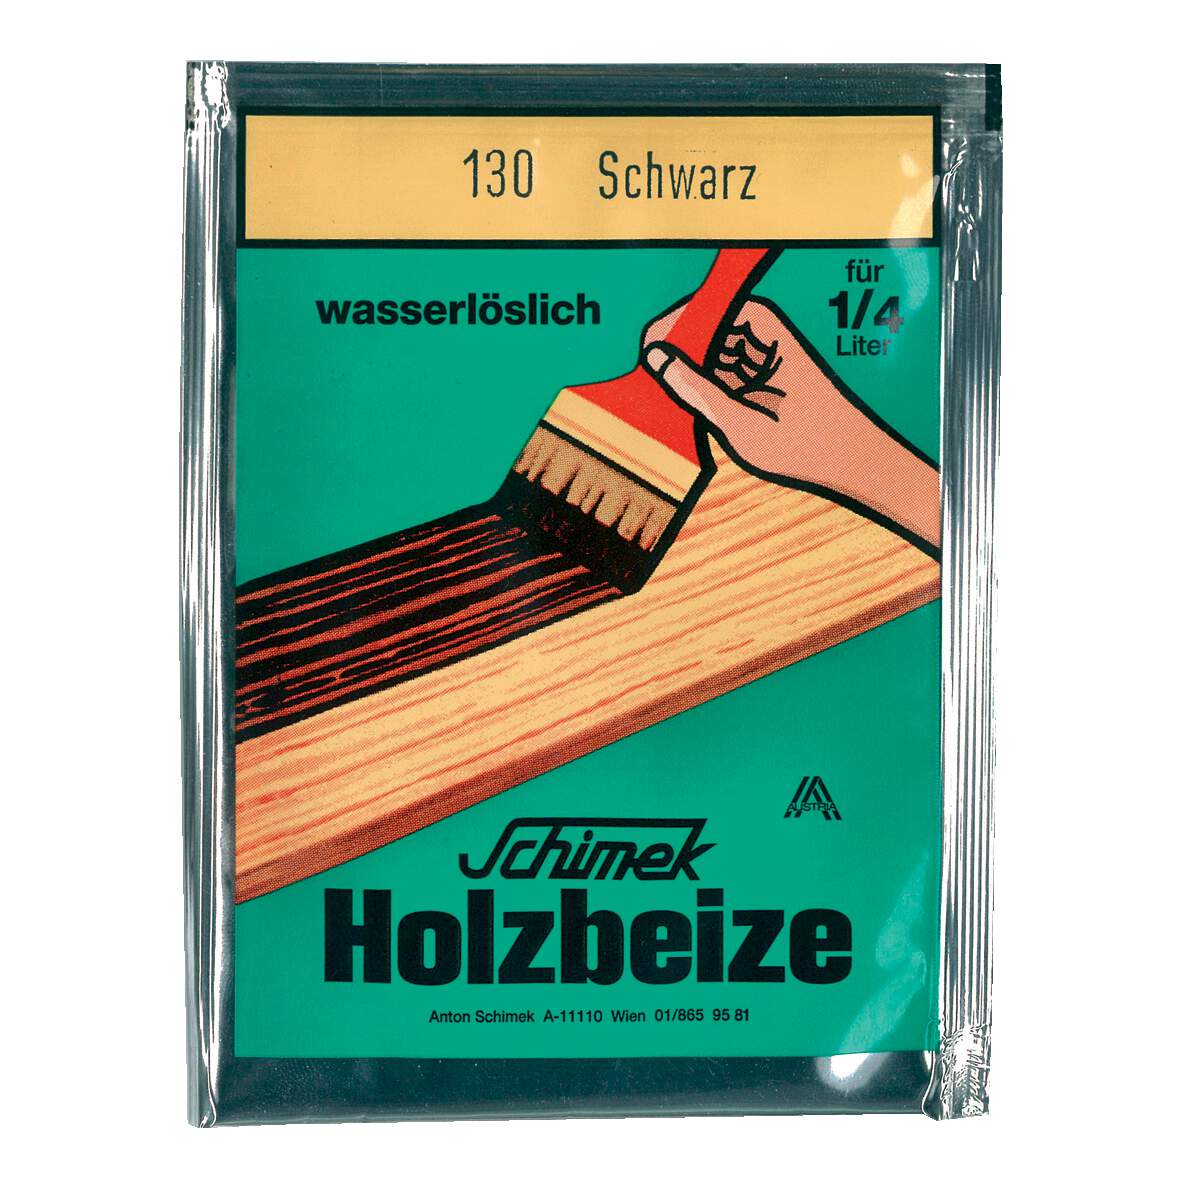 1216616 - Holzbeize Zirbe Nr.96 wasserlöslich